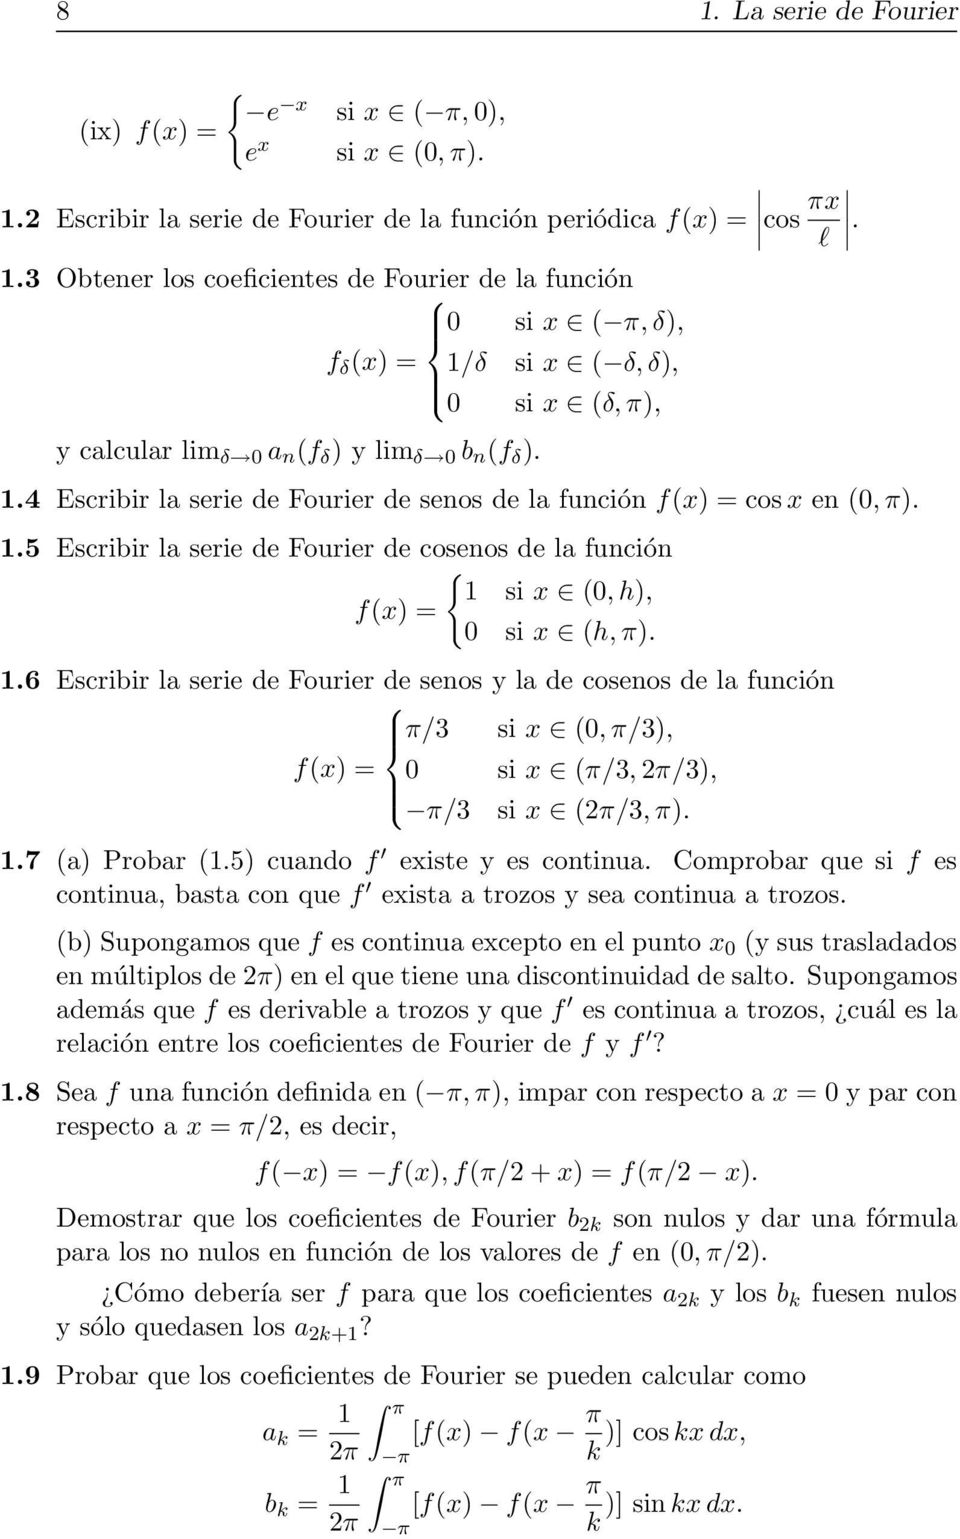 5 Escribir la serie de Fourier de cosenos de la función { 1 si x (0, h), f(x) = 0 si x (h, π). 1.6 Escribir la serie de Fourier de senos y la de cosenos de la función π/3 si x (0, π/3), f(x) = 0 si x (π/3,2π/3), π/3 si x (2π/3, π).